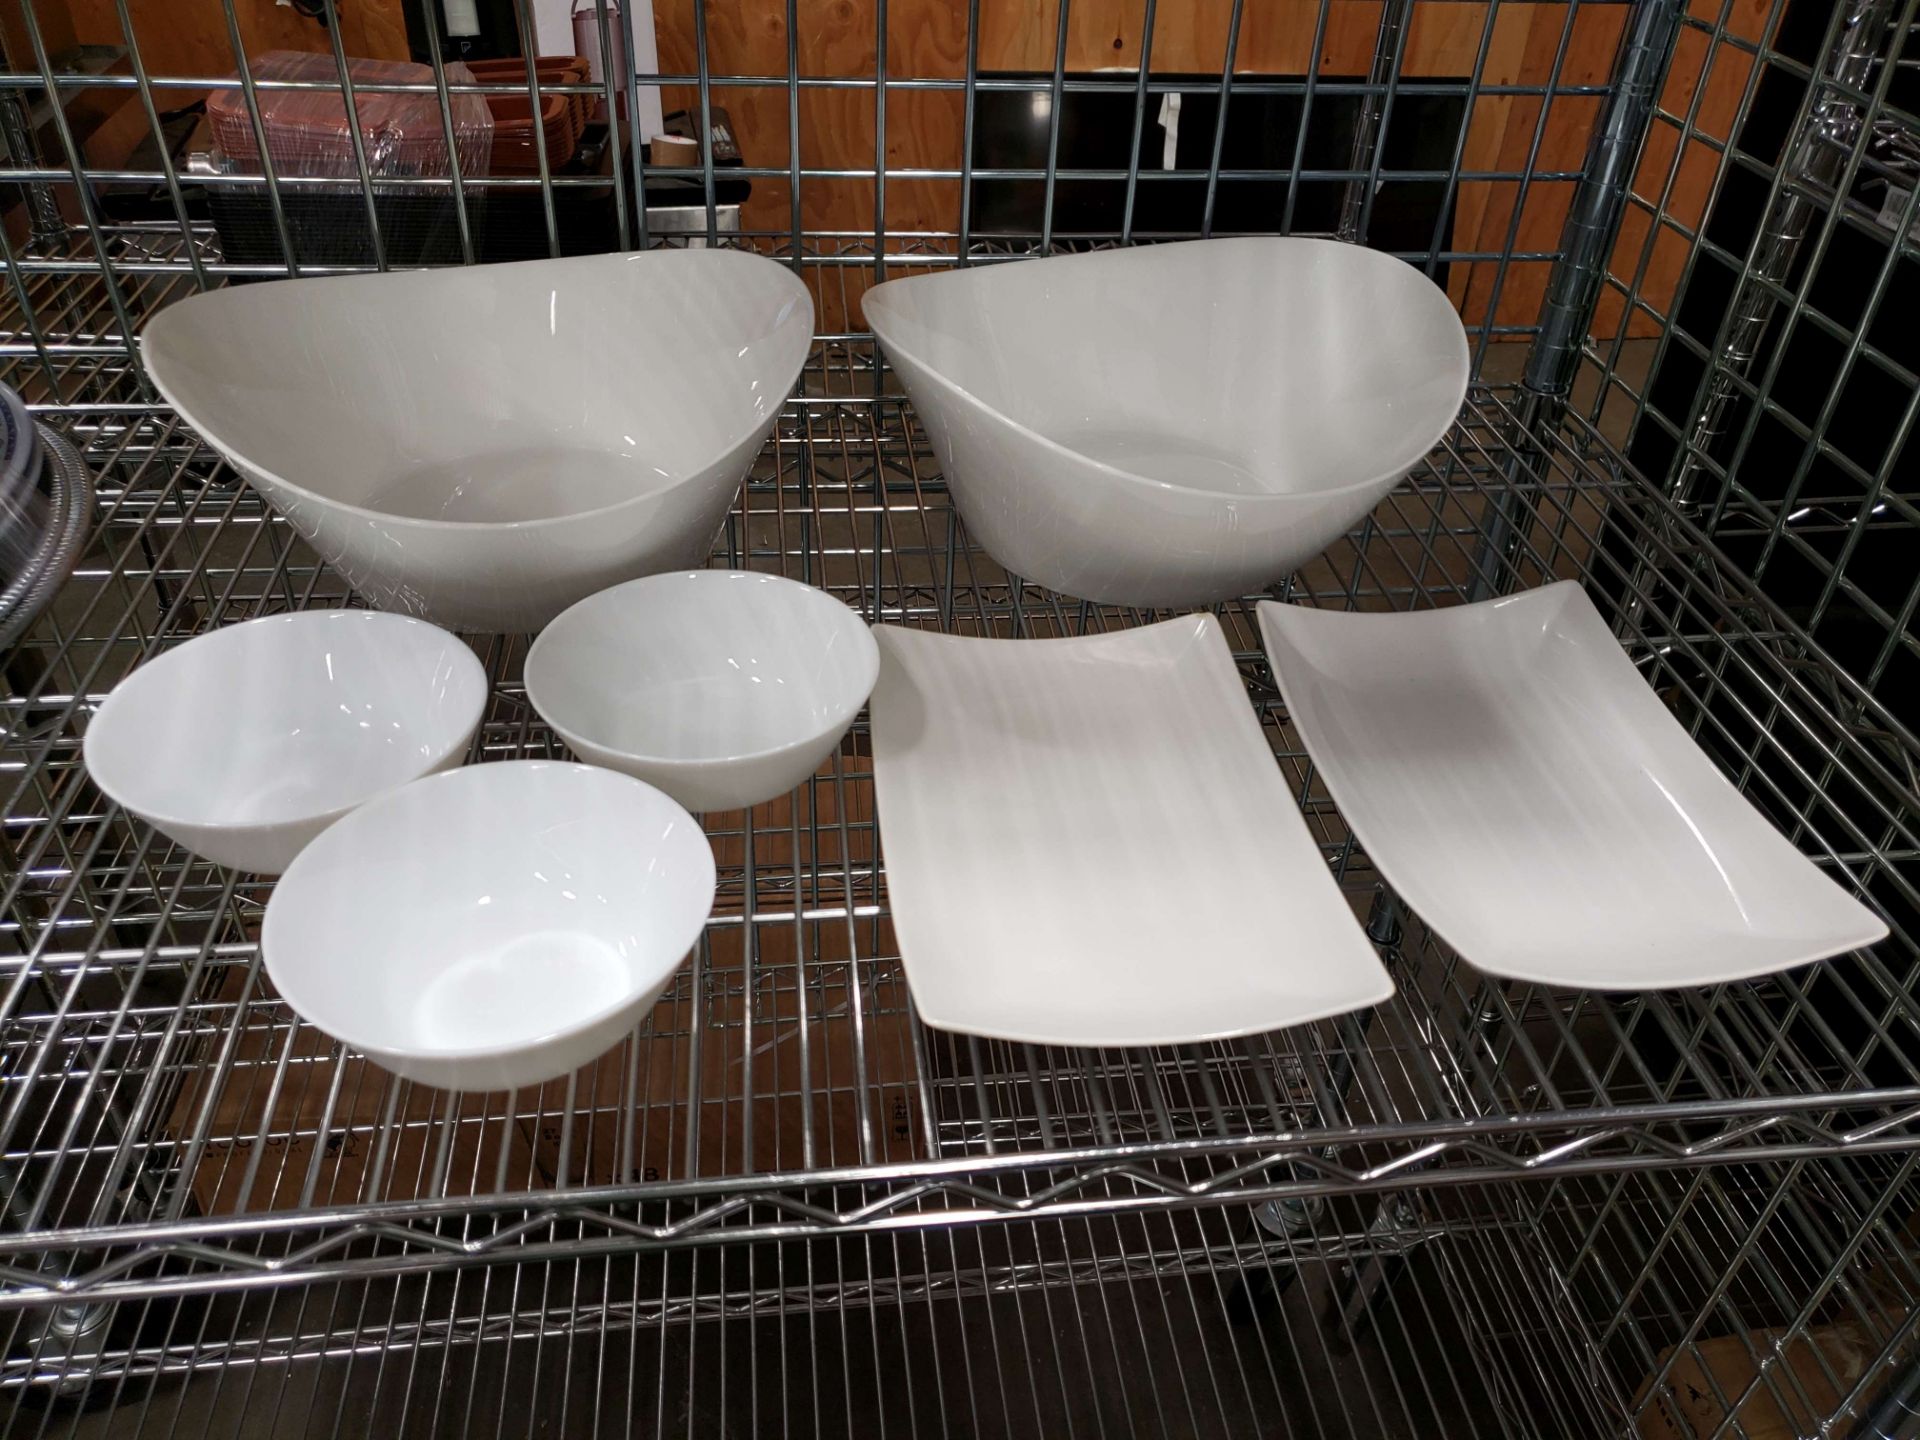 White Design Bowls & Platters (7 Pieces Total) - 1 Lot